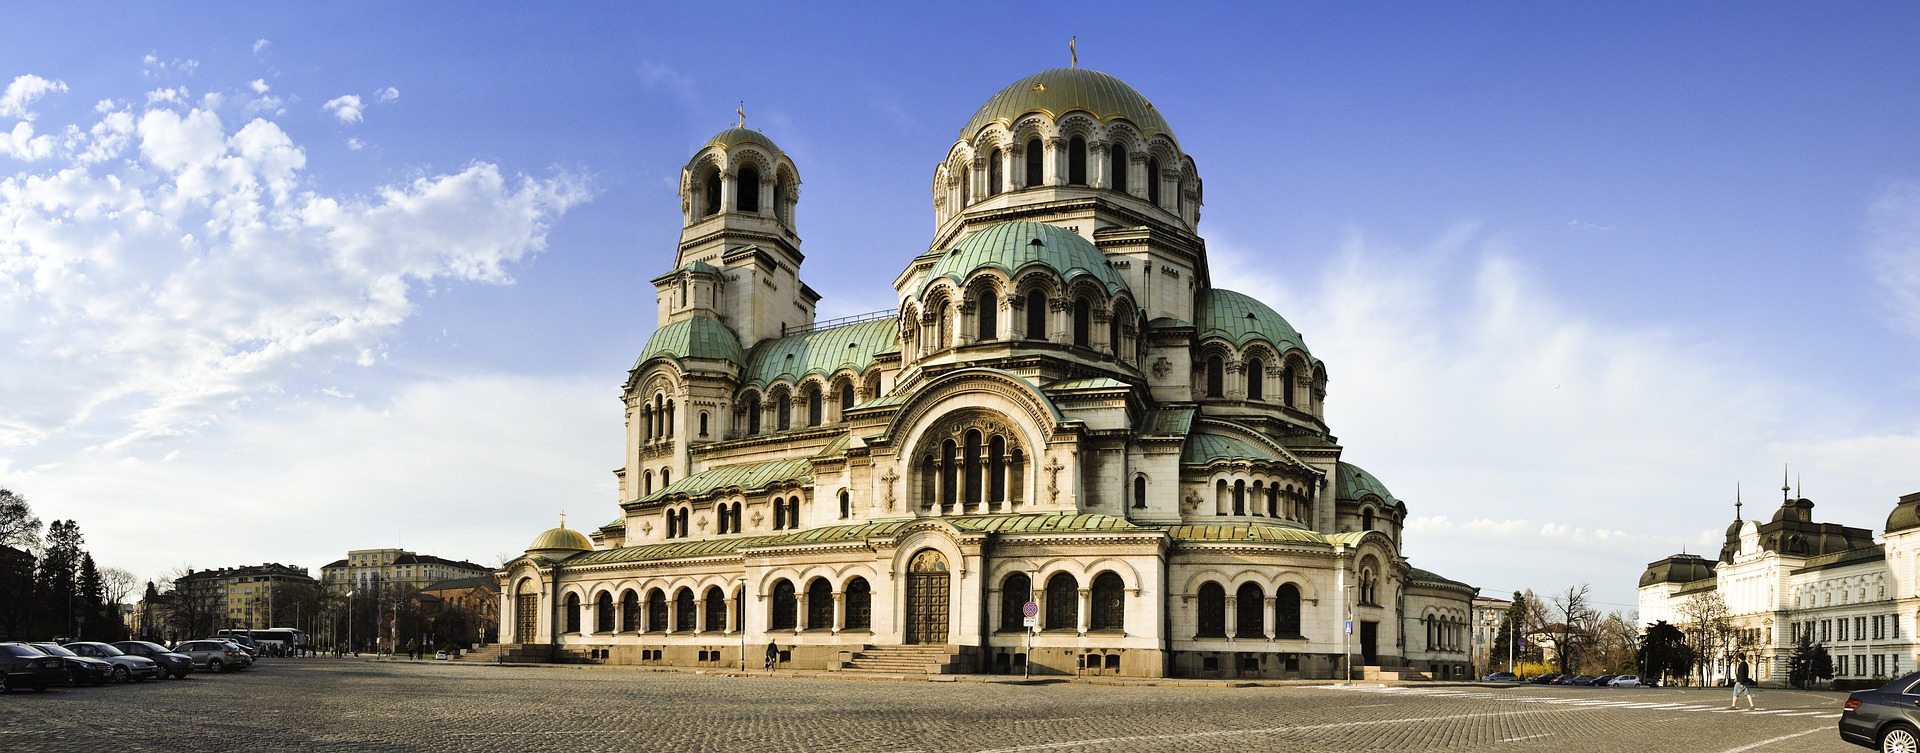 sofija-bugarska-rilski-manastir-plovdiv-putovanje-autobusom (2)